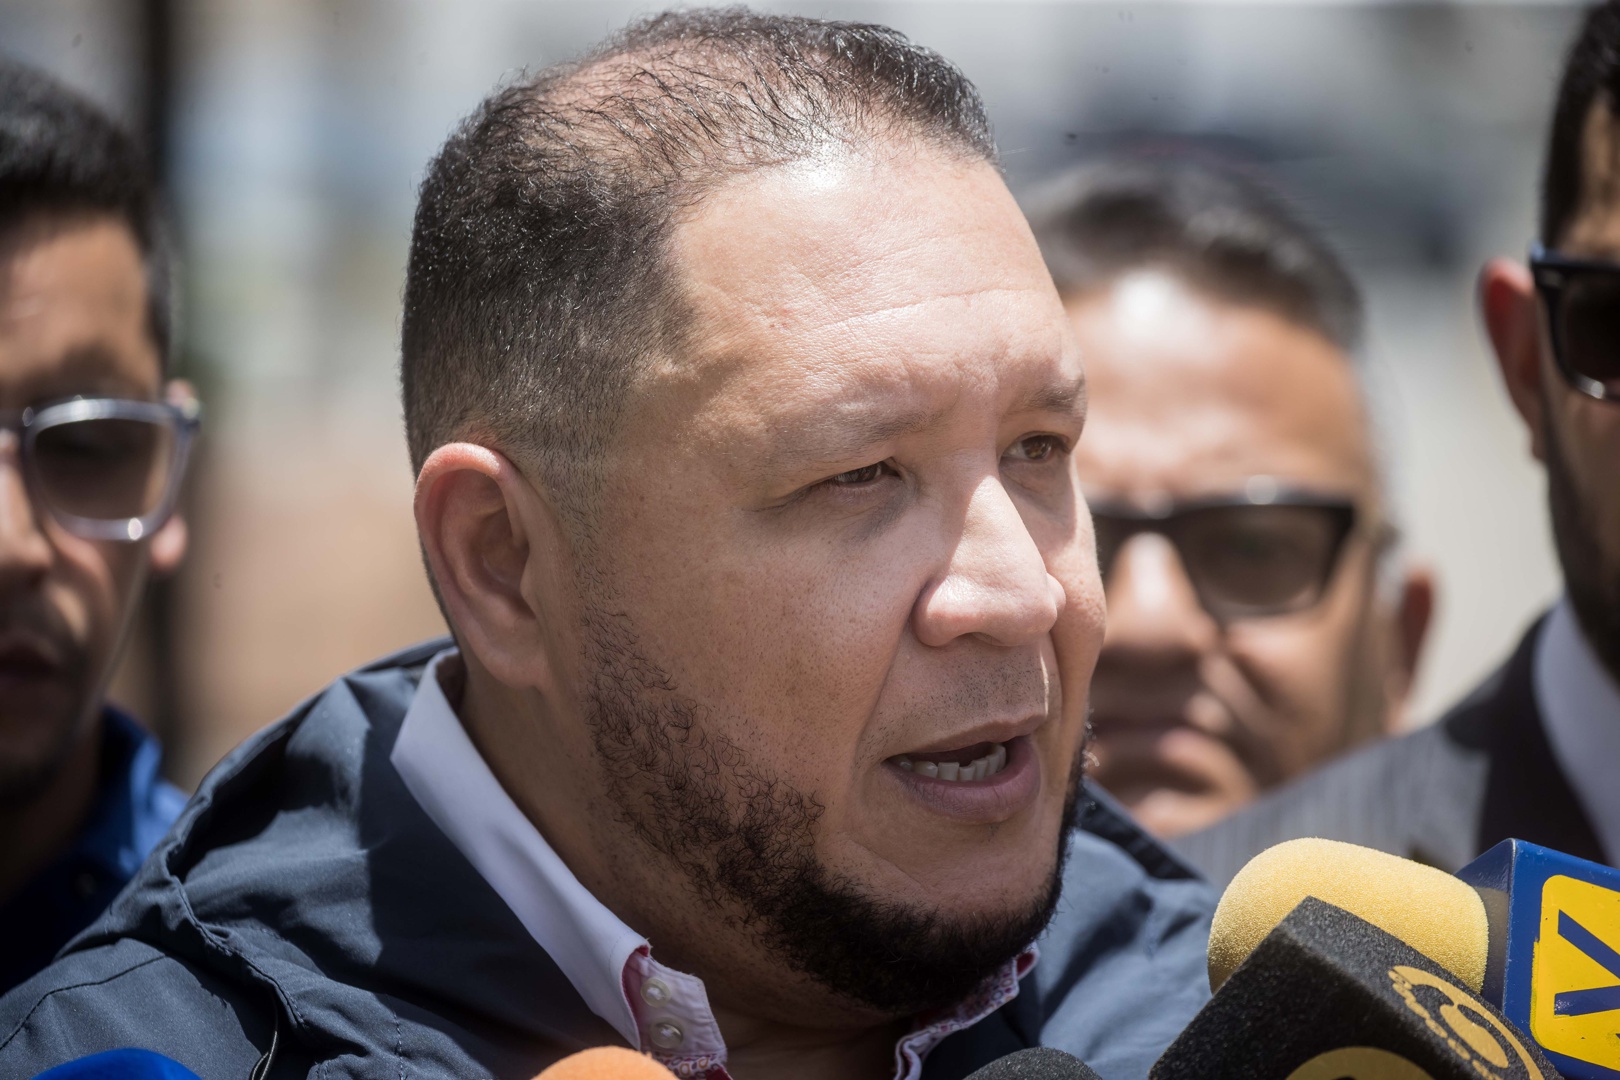 partido de capriles cree que intervención judicial ratifica ausencia de estado de derecho